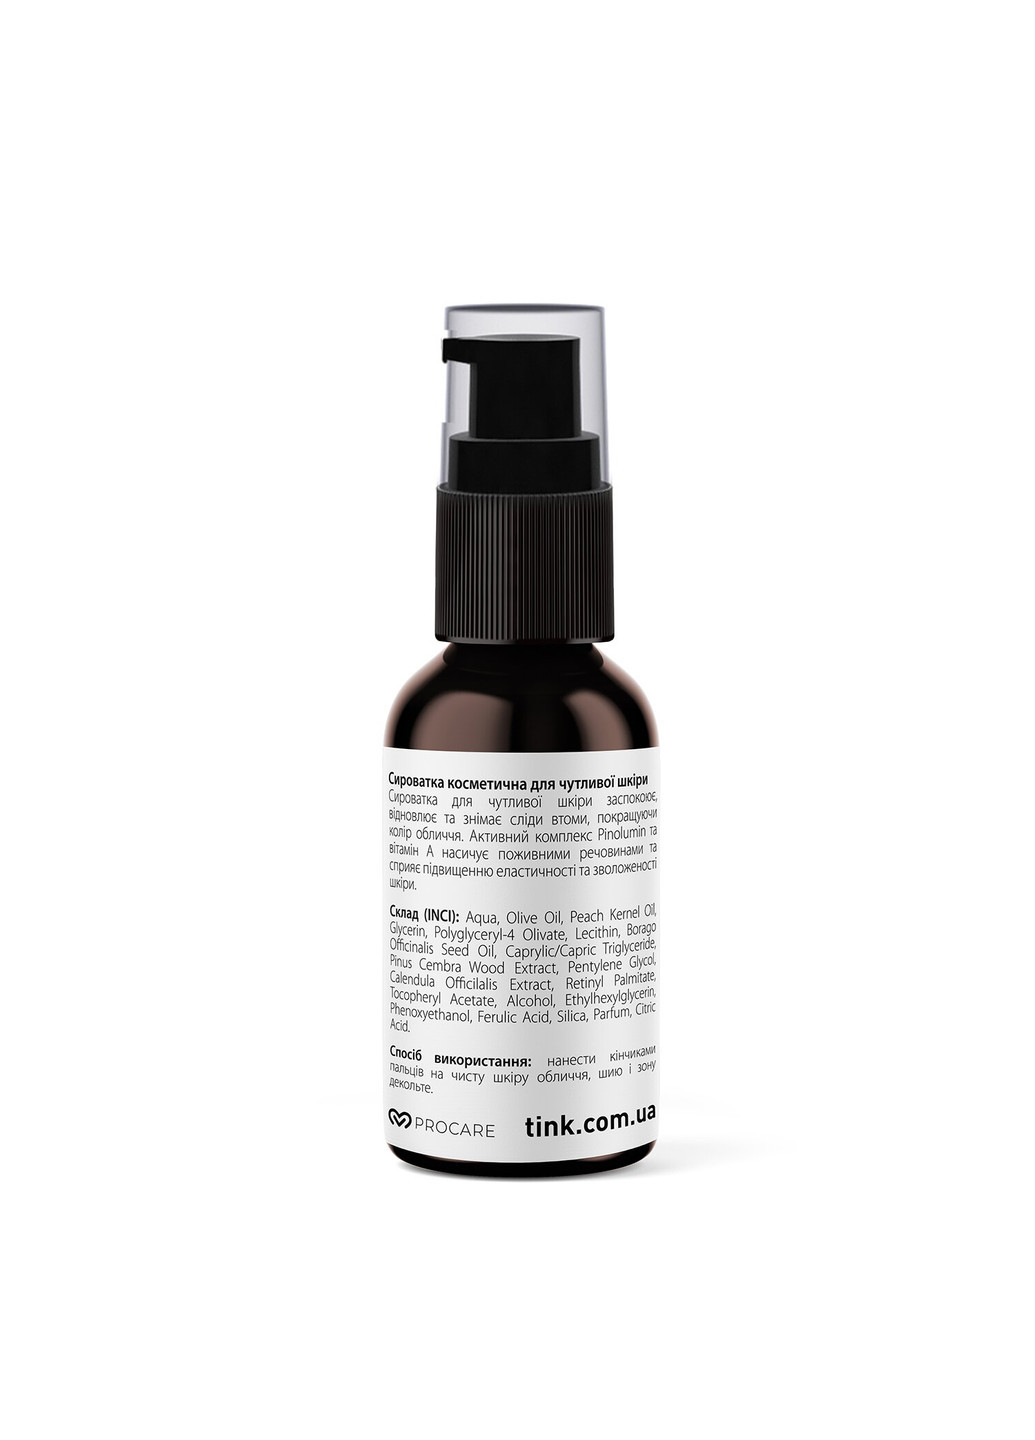 Сыворотка для лица для чувствительной кожи с витамином А и маслом бораго Soothing Serum 30 мл Tink (251853760)